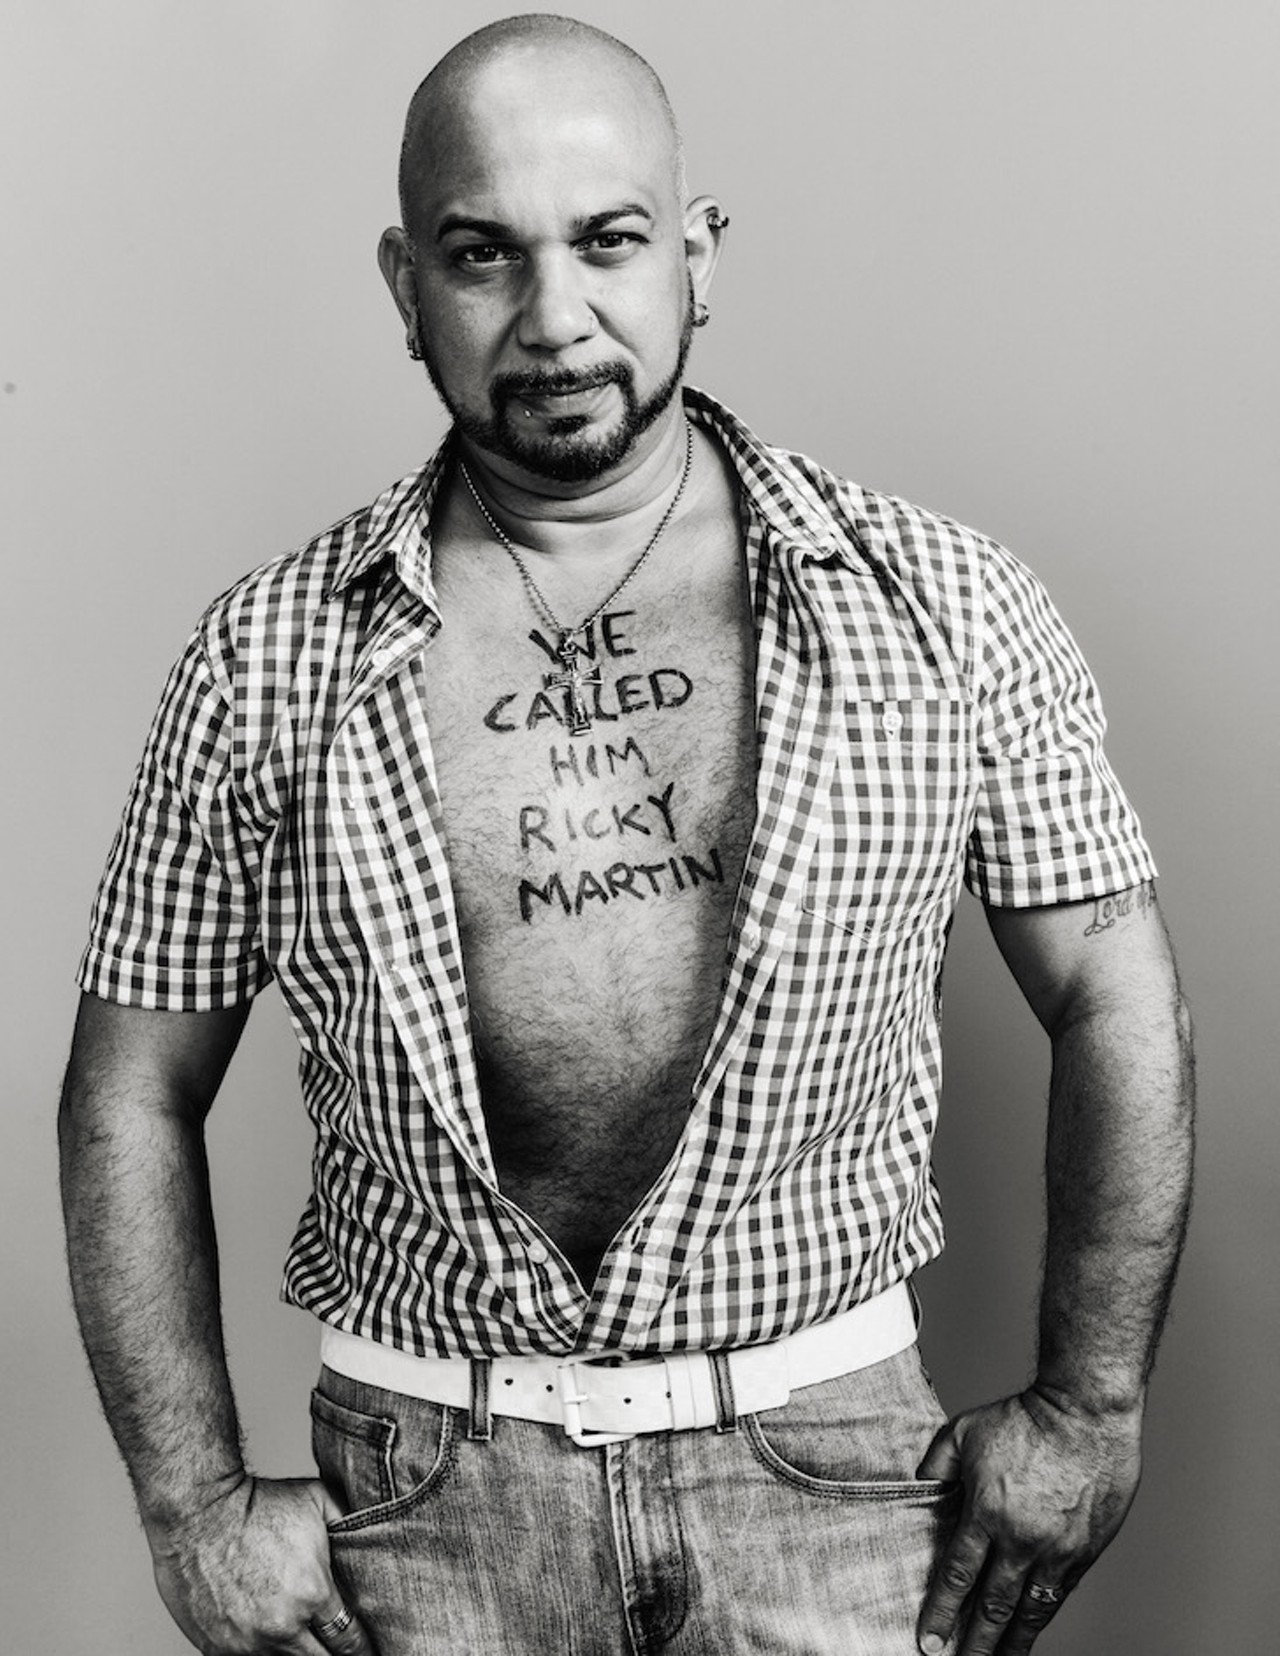 Samuel Maldonado, survivor of the Pulse nightclub shooting.